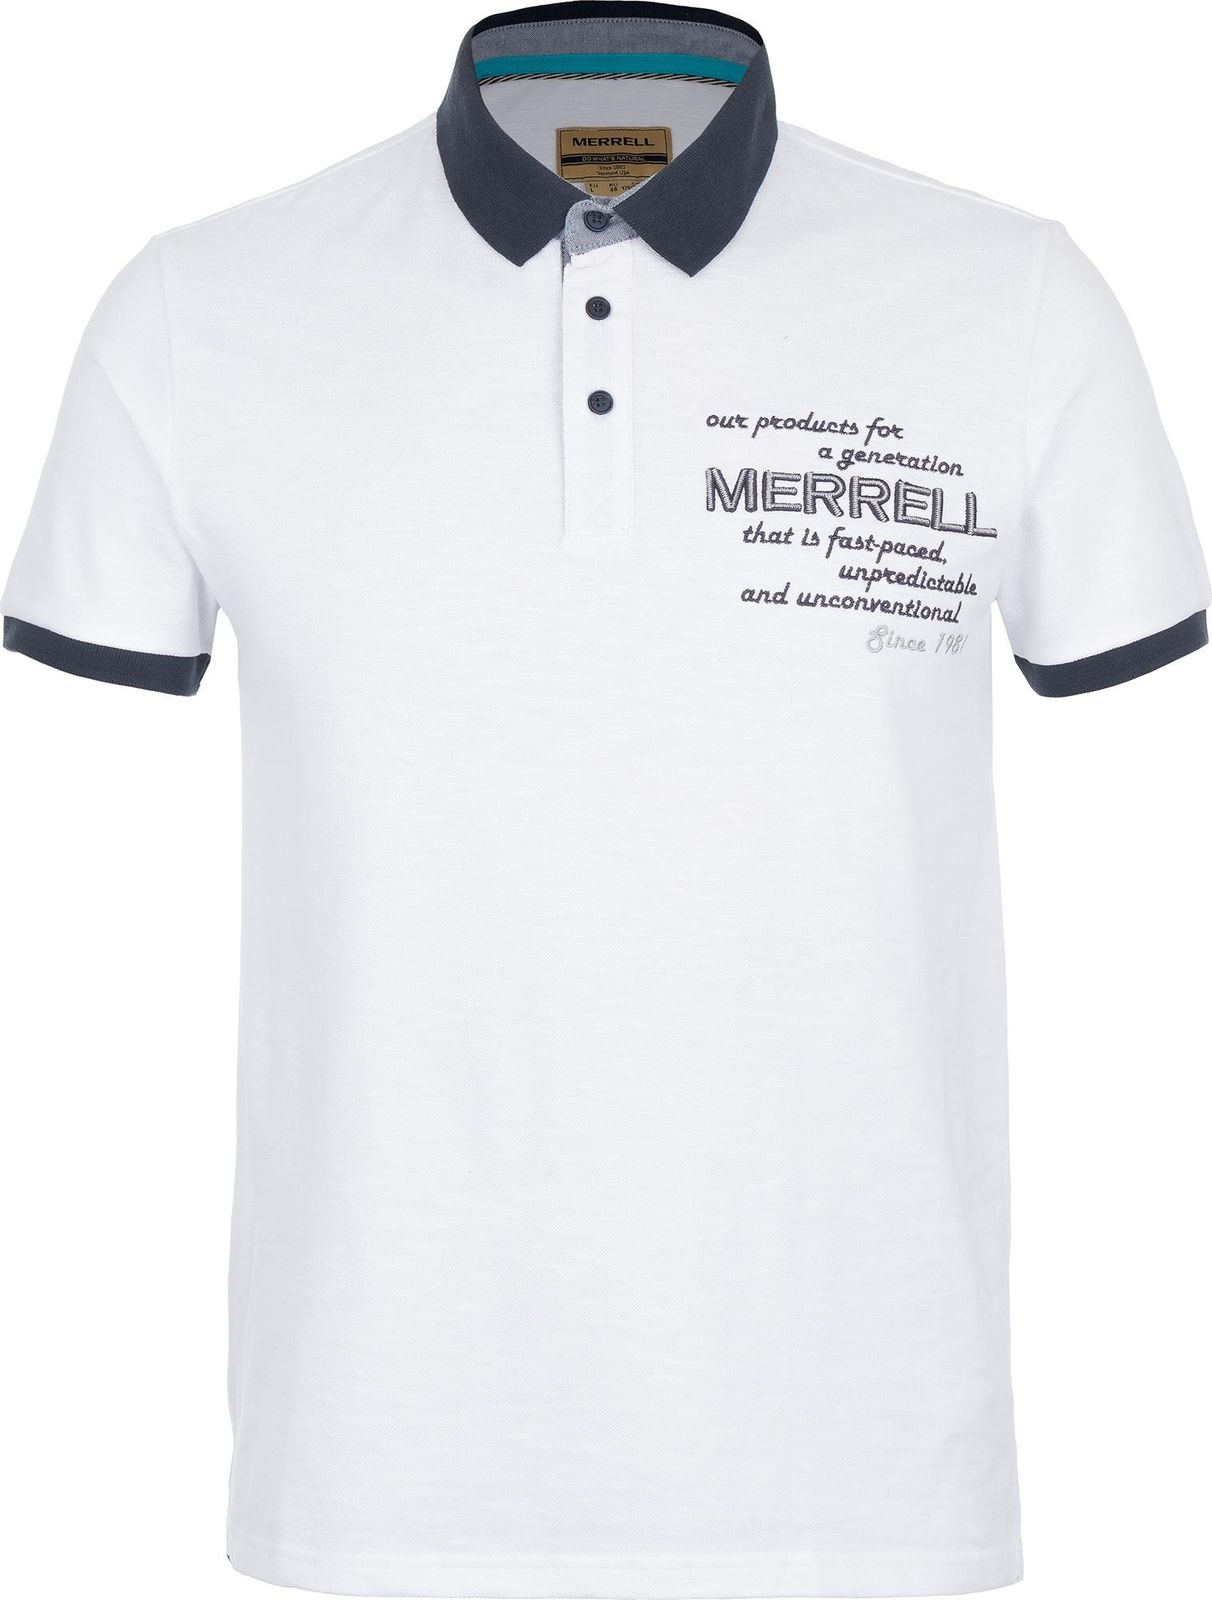   Merrell Men's Polo, : . S17AMRPOM01-00.  56